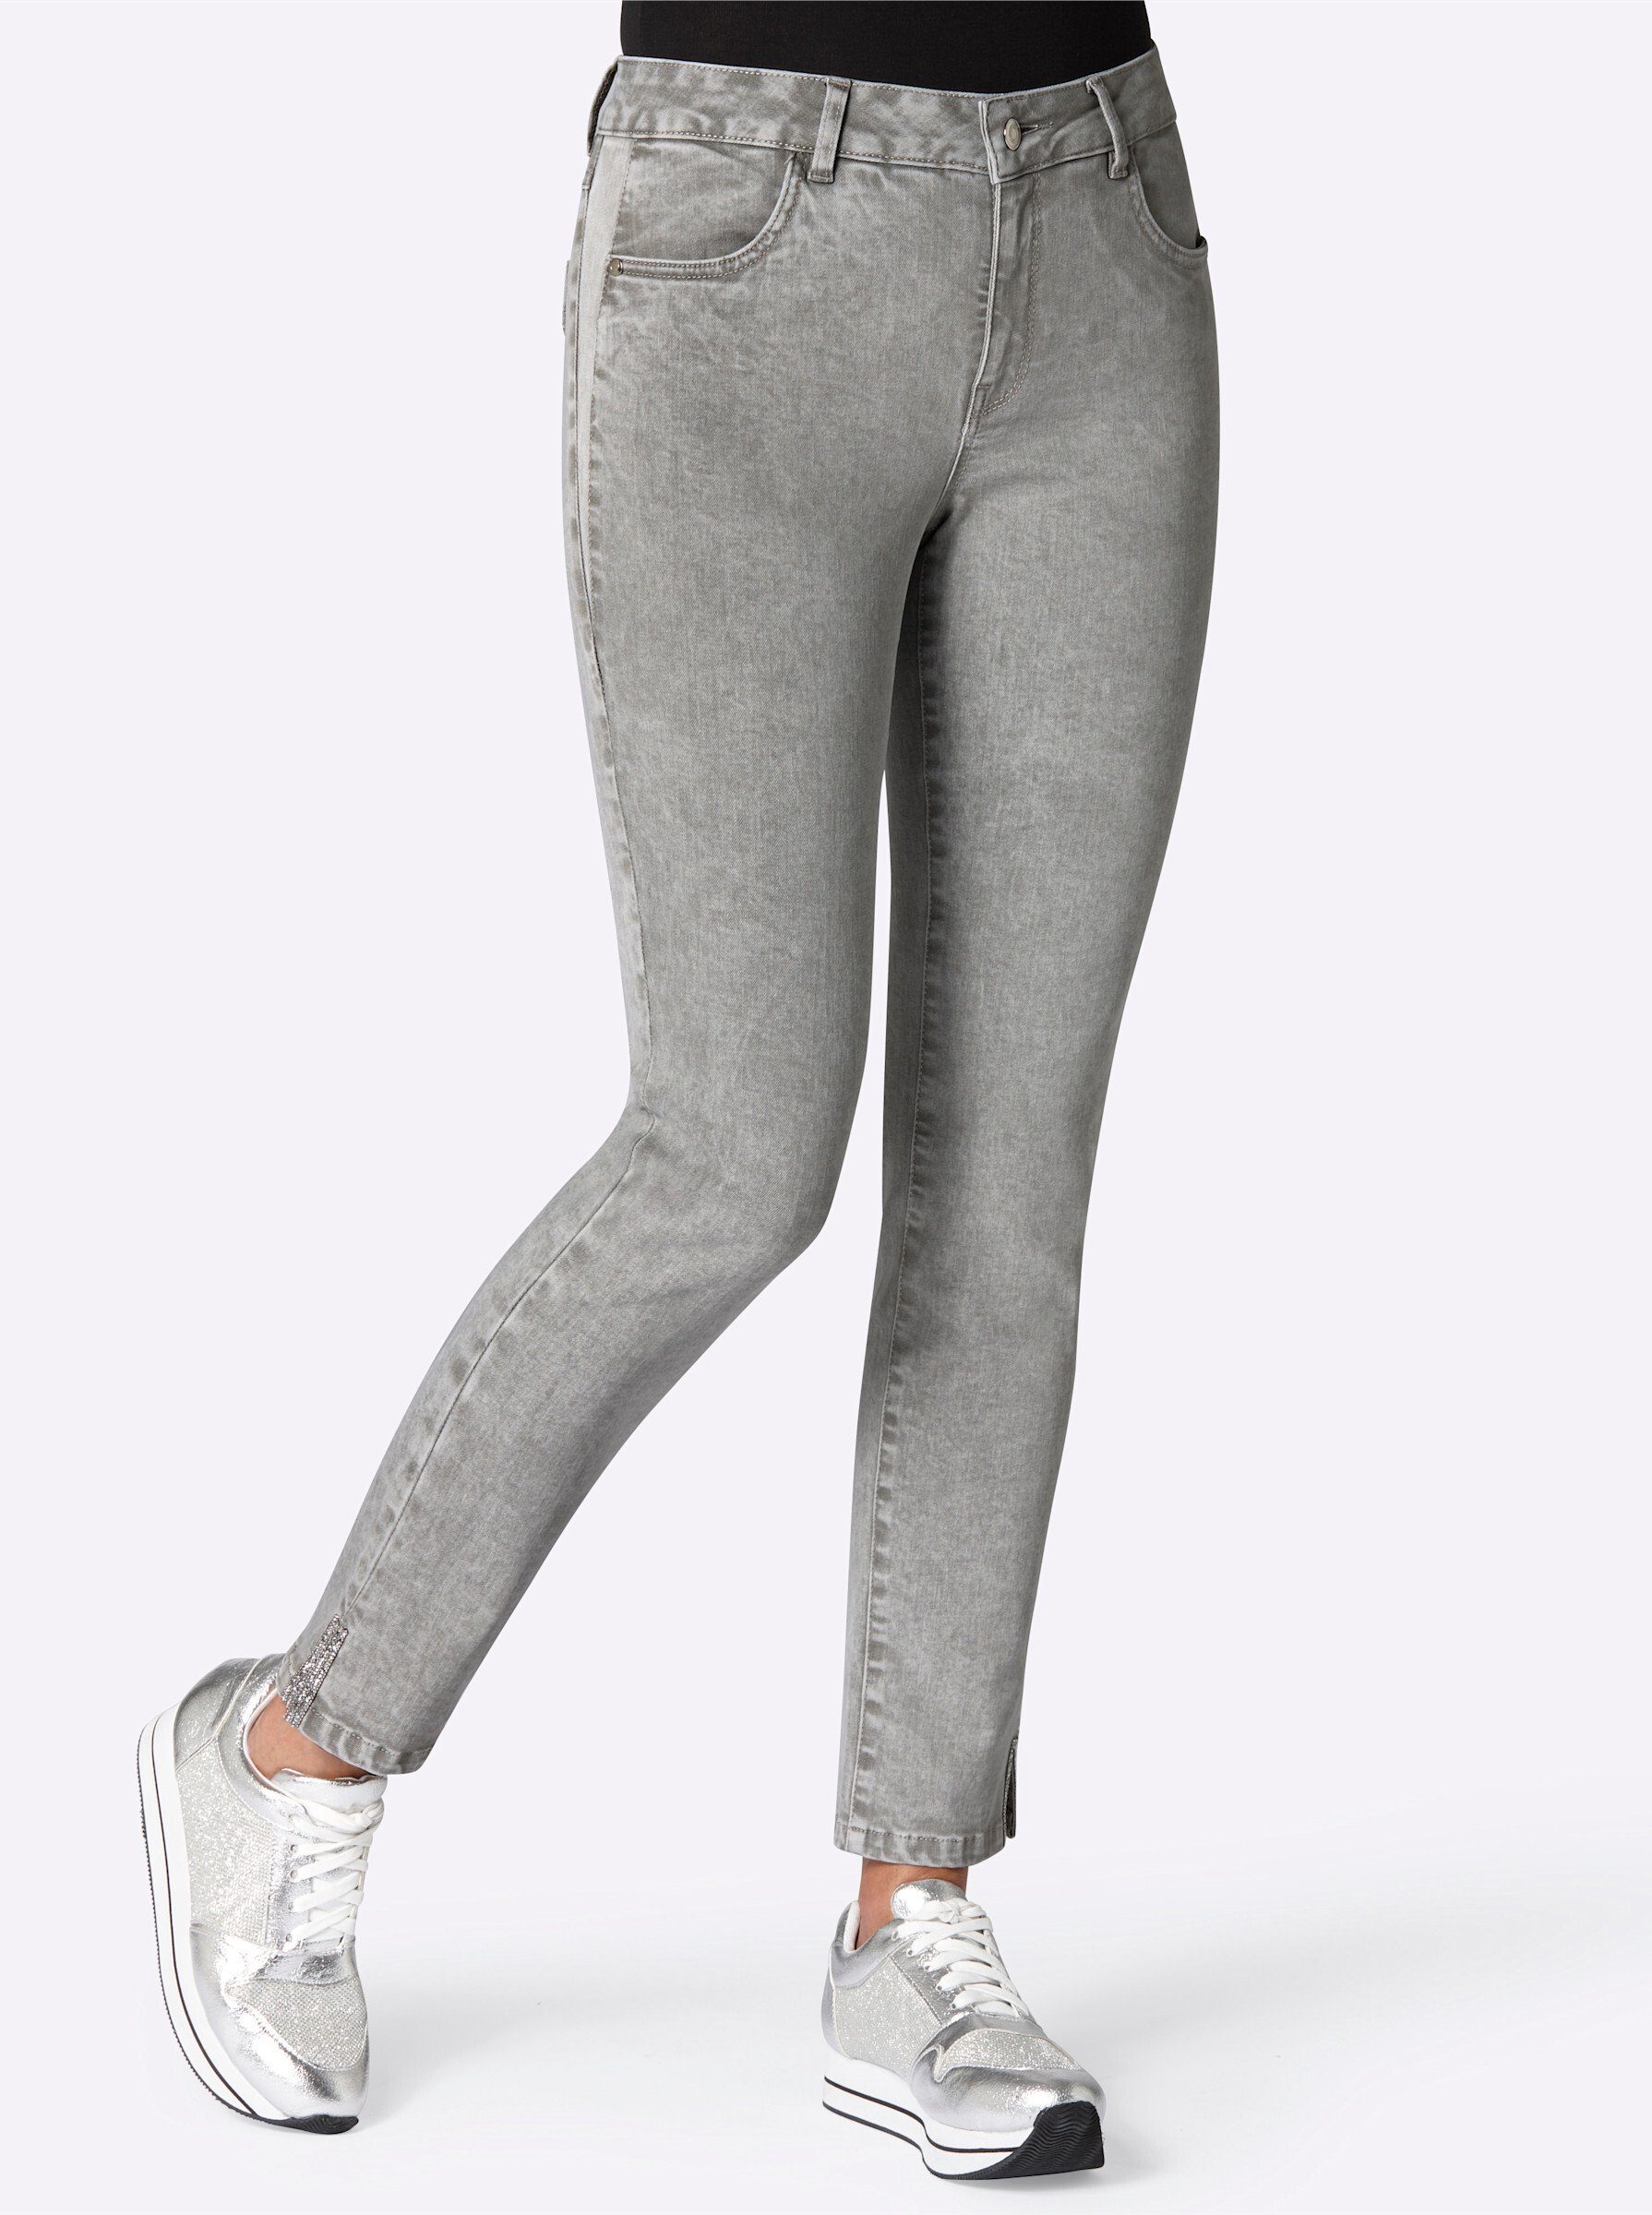 WITT WEIDEN Bequeme Jeans grey-denim | Slim-Fit Jeans